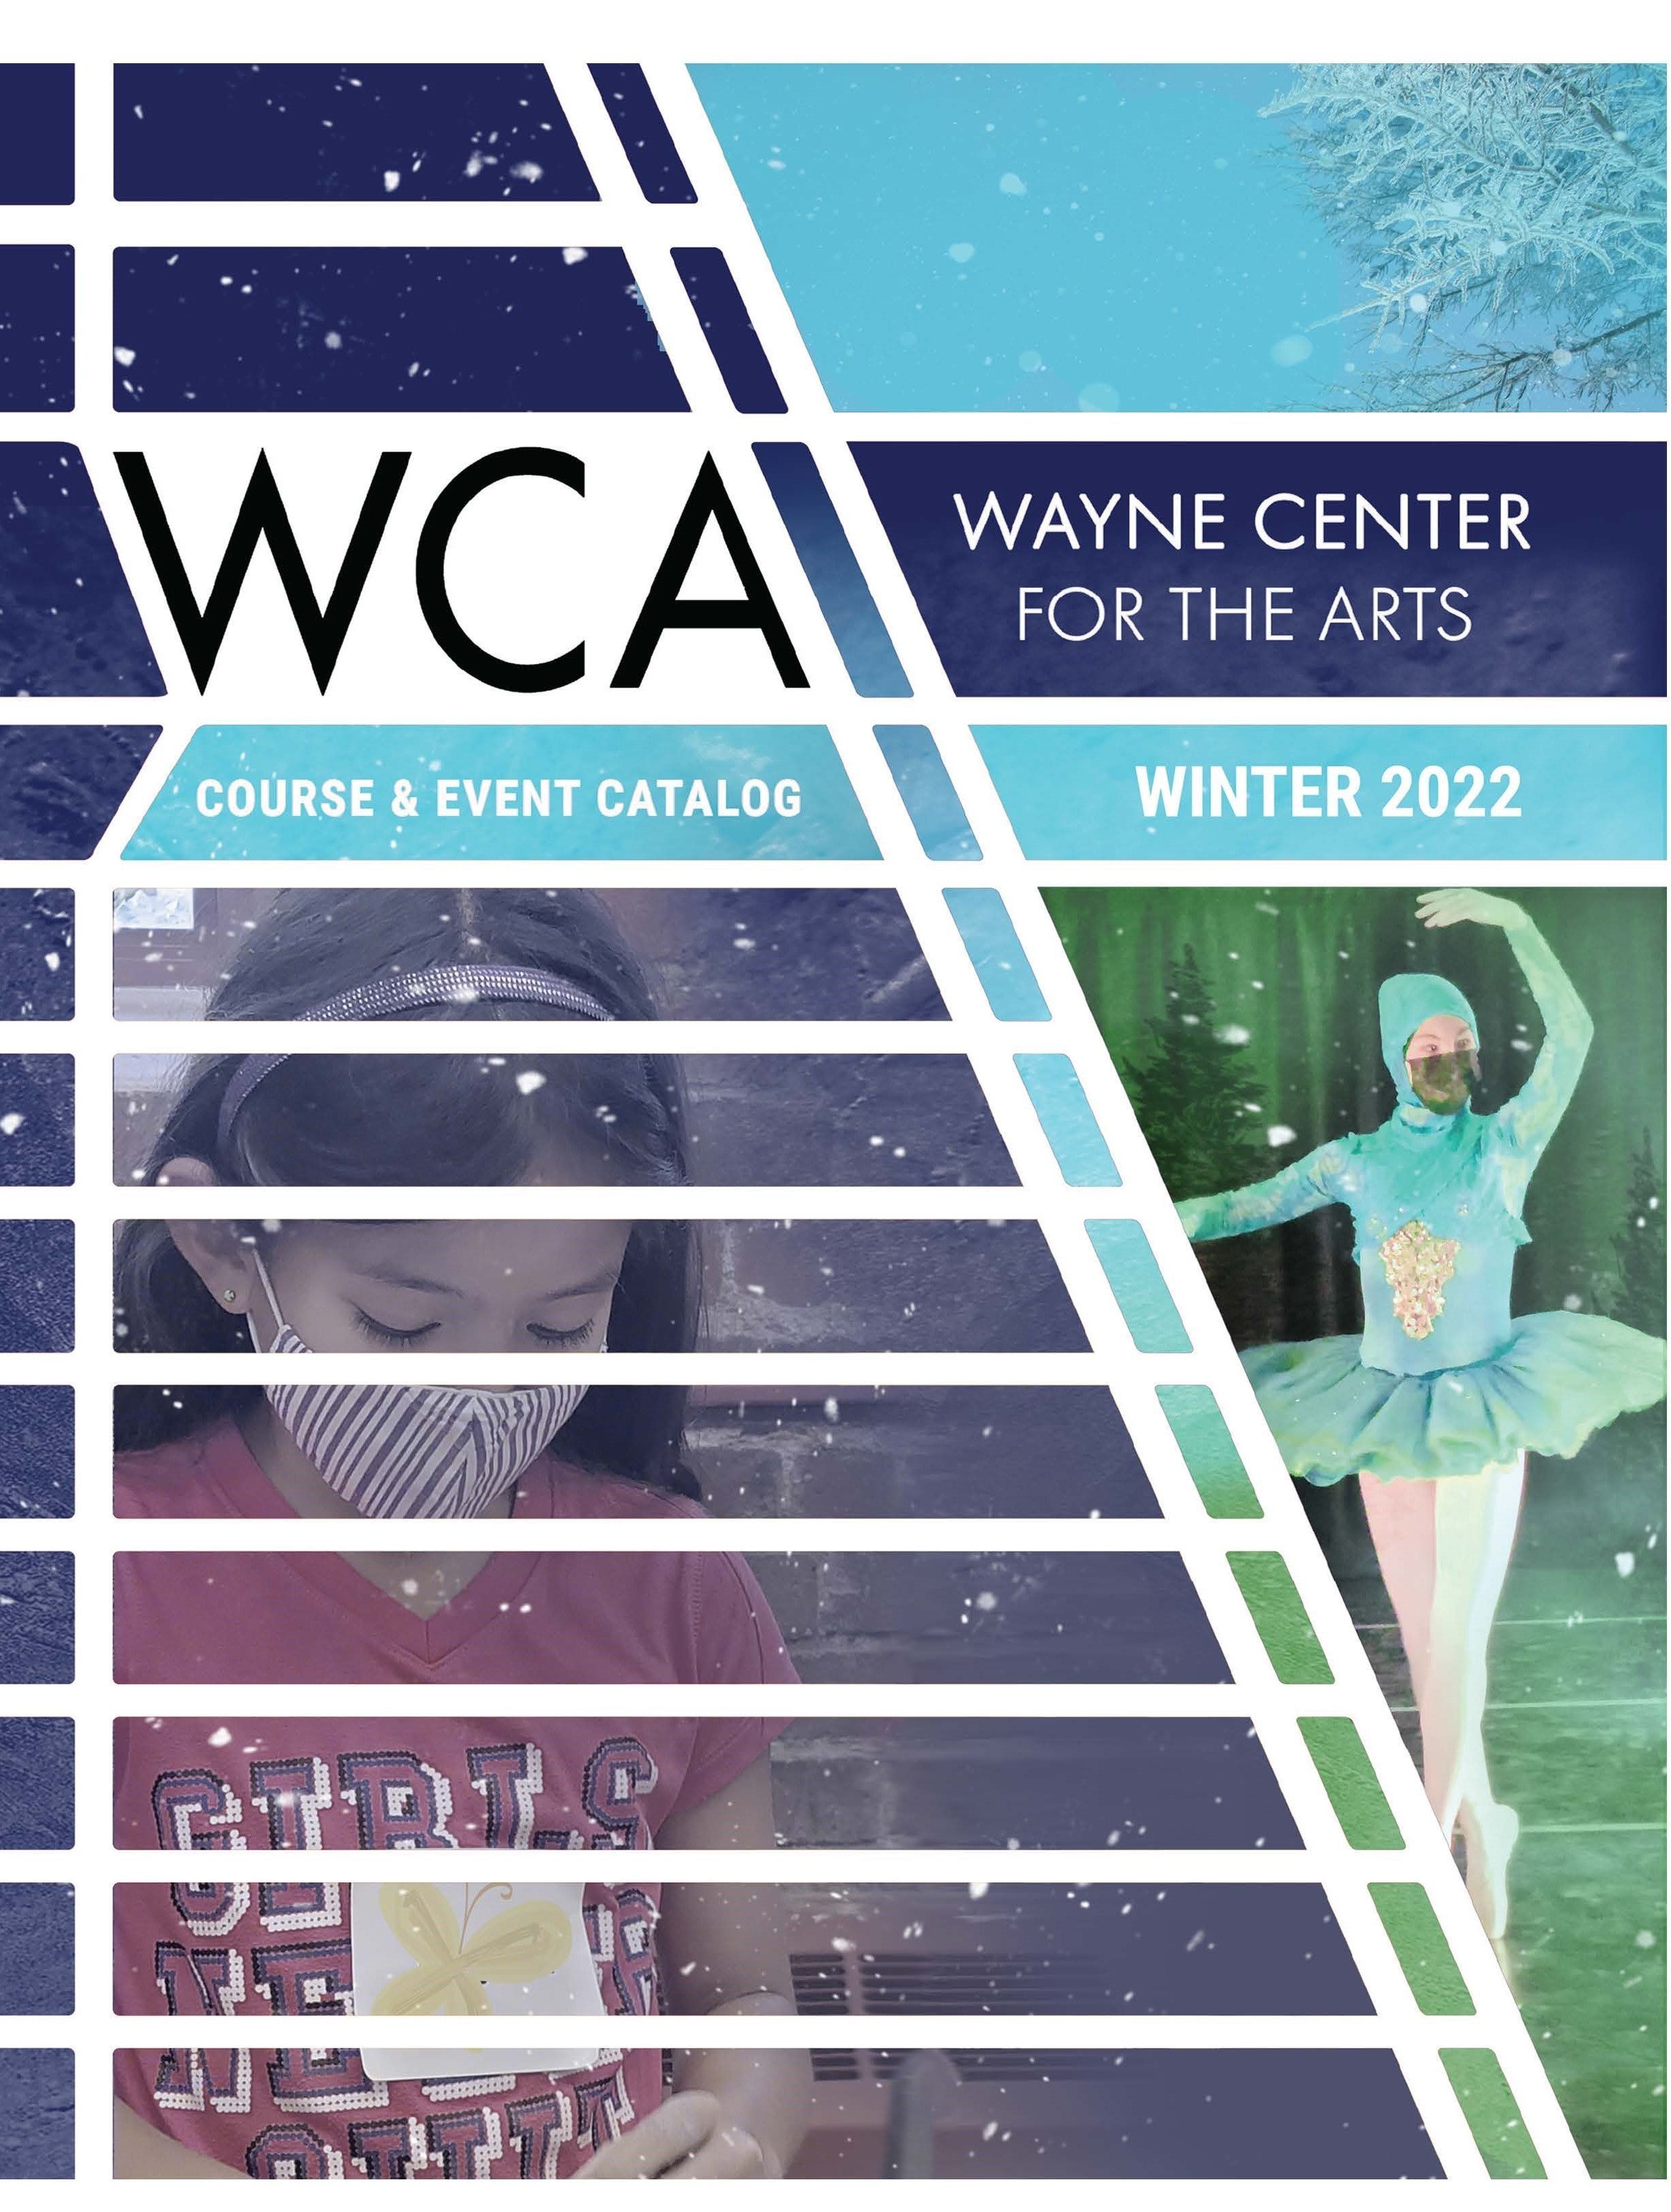 WCA 2021 Winter Course & Event Catalog